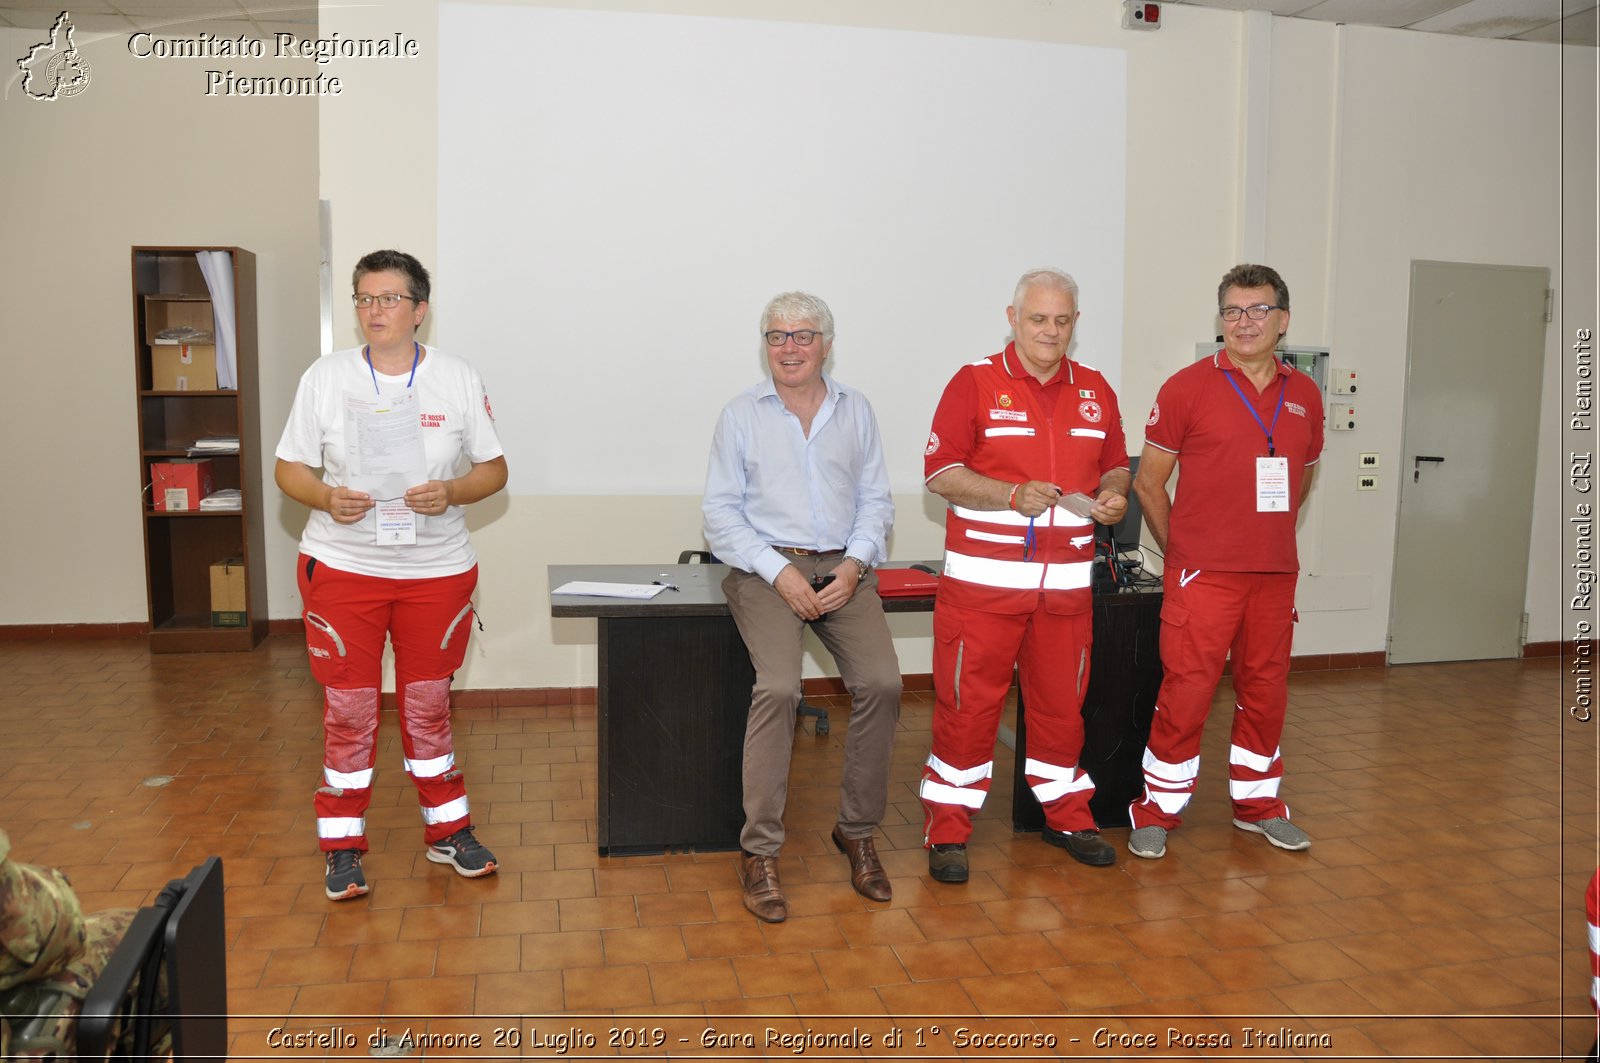 Castello di Annone 20 Luglio 2019 - Gara Regionale di 1 Soccorso - Croce Rossa Italiana - Comitato Regionale del Piemonte